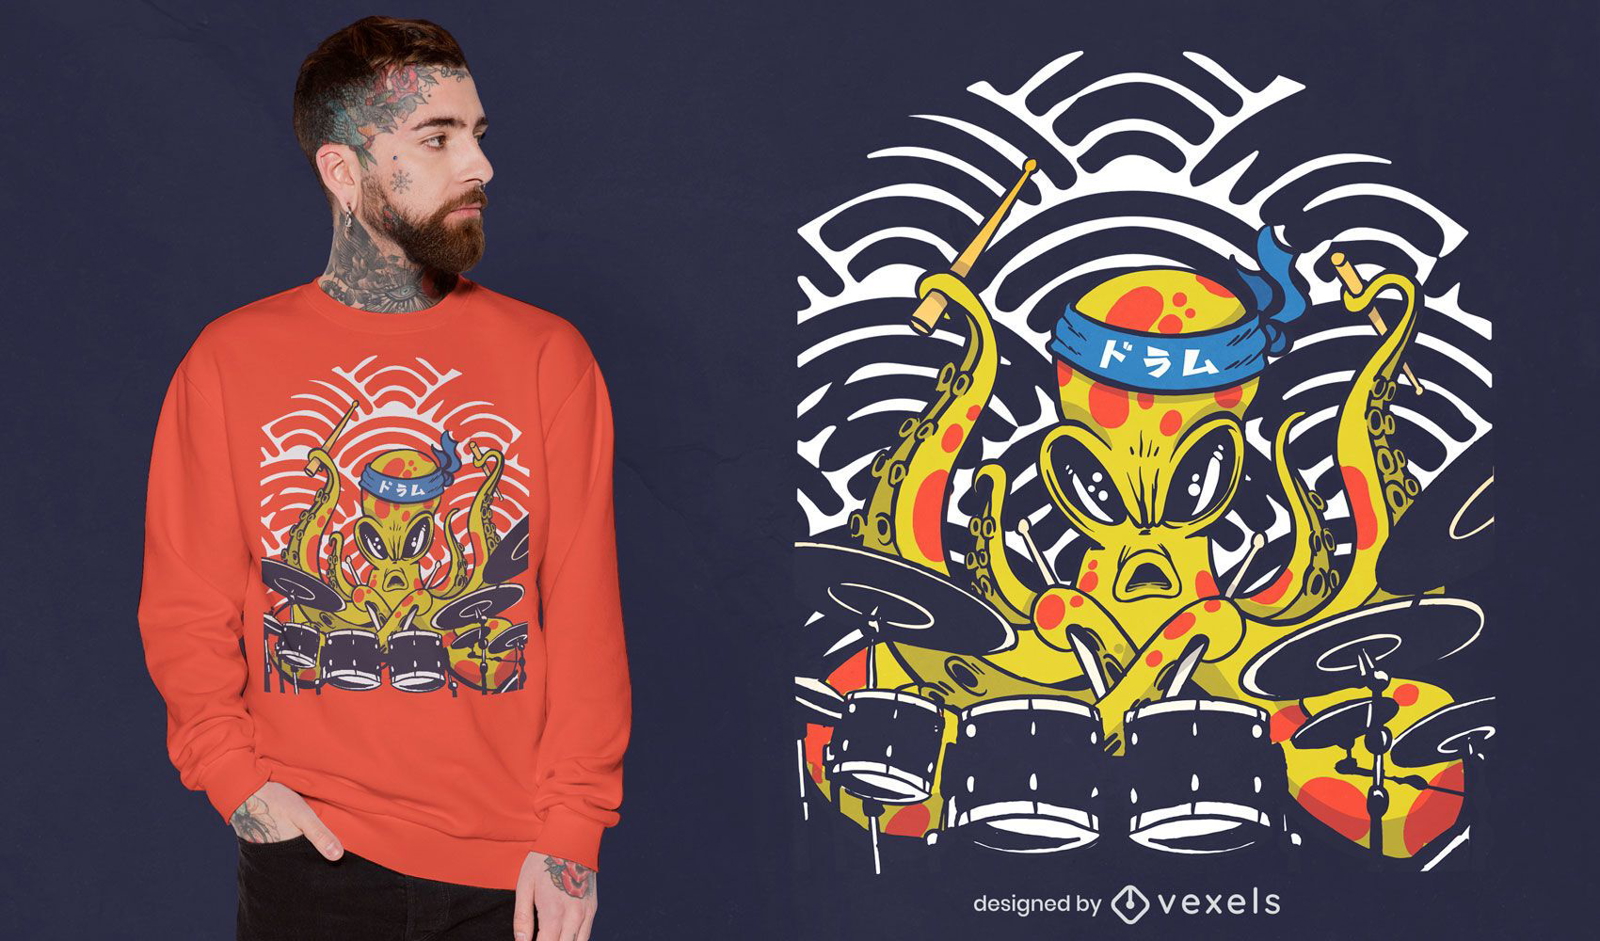 Octopus drummer t-shirt design